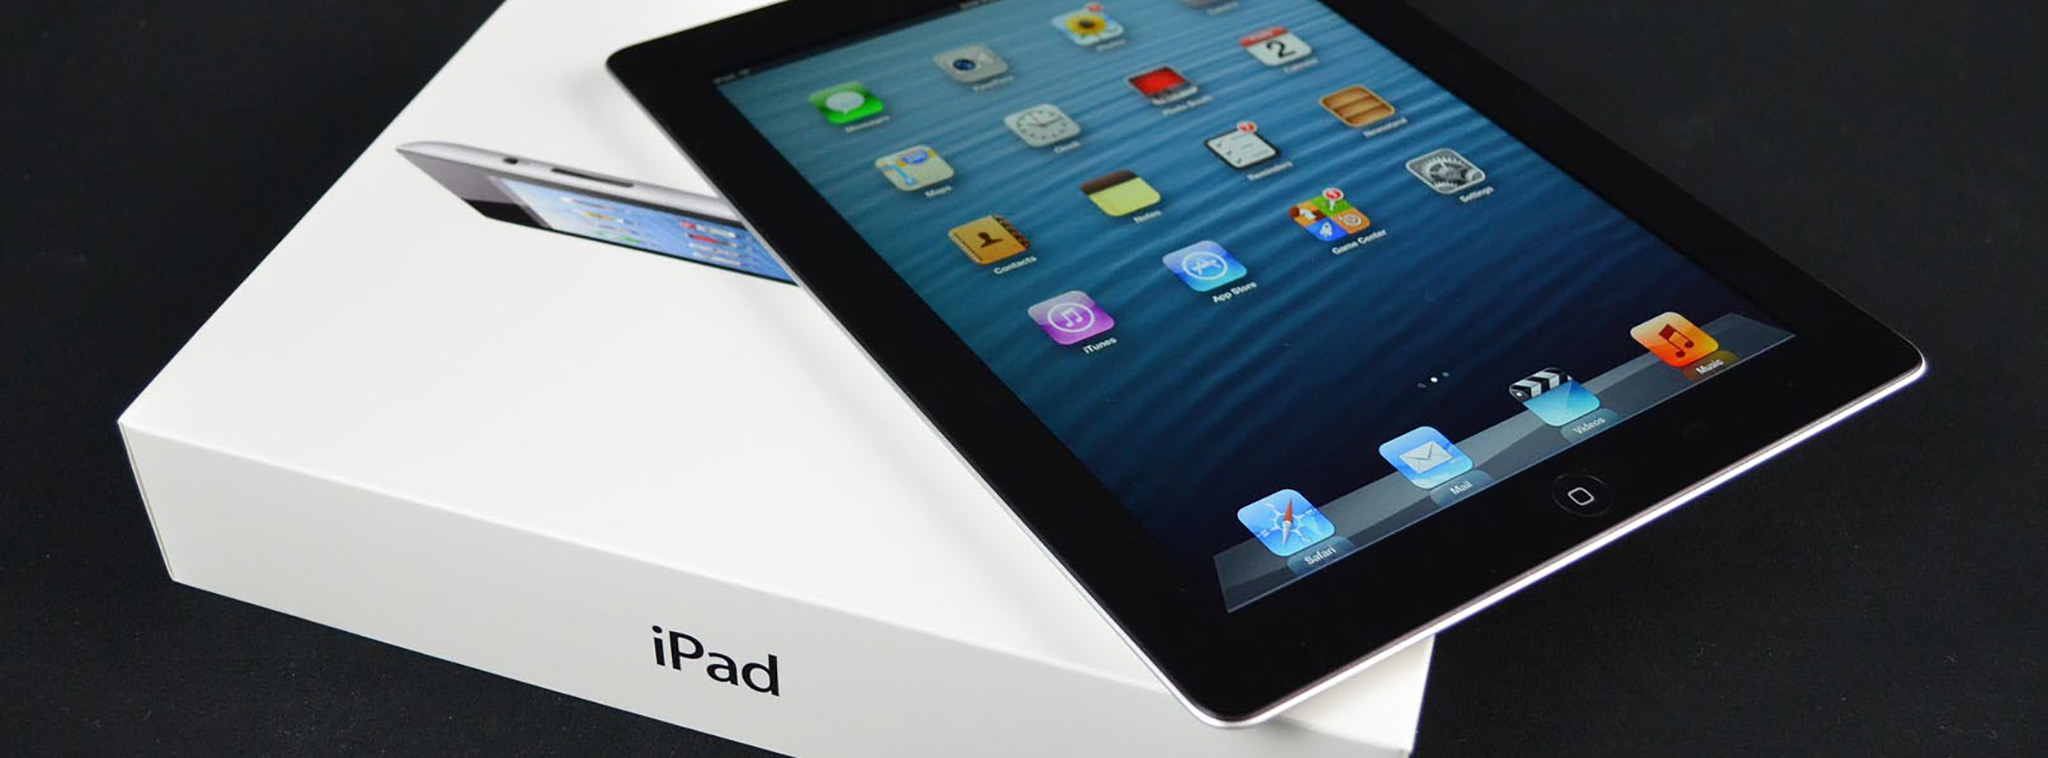 Home iPad 4 được đổi.jpg